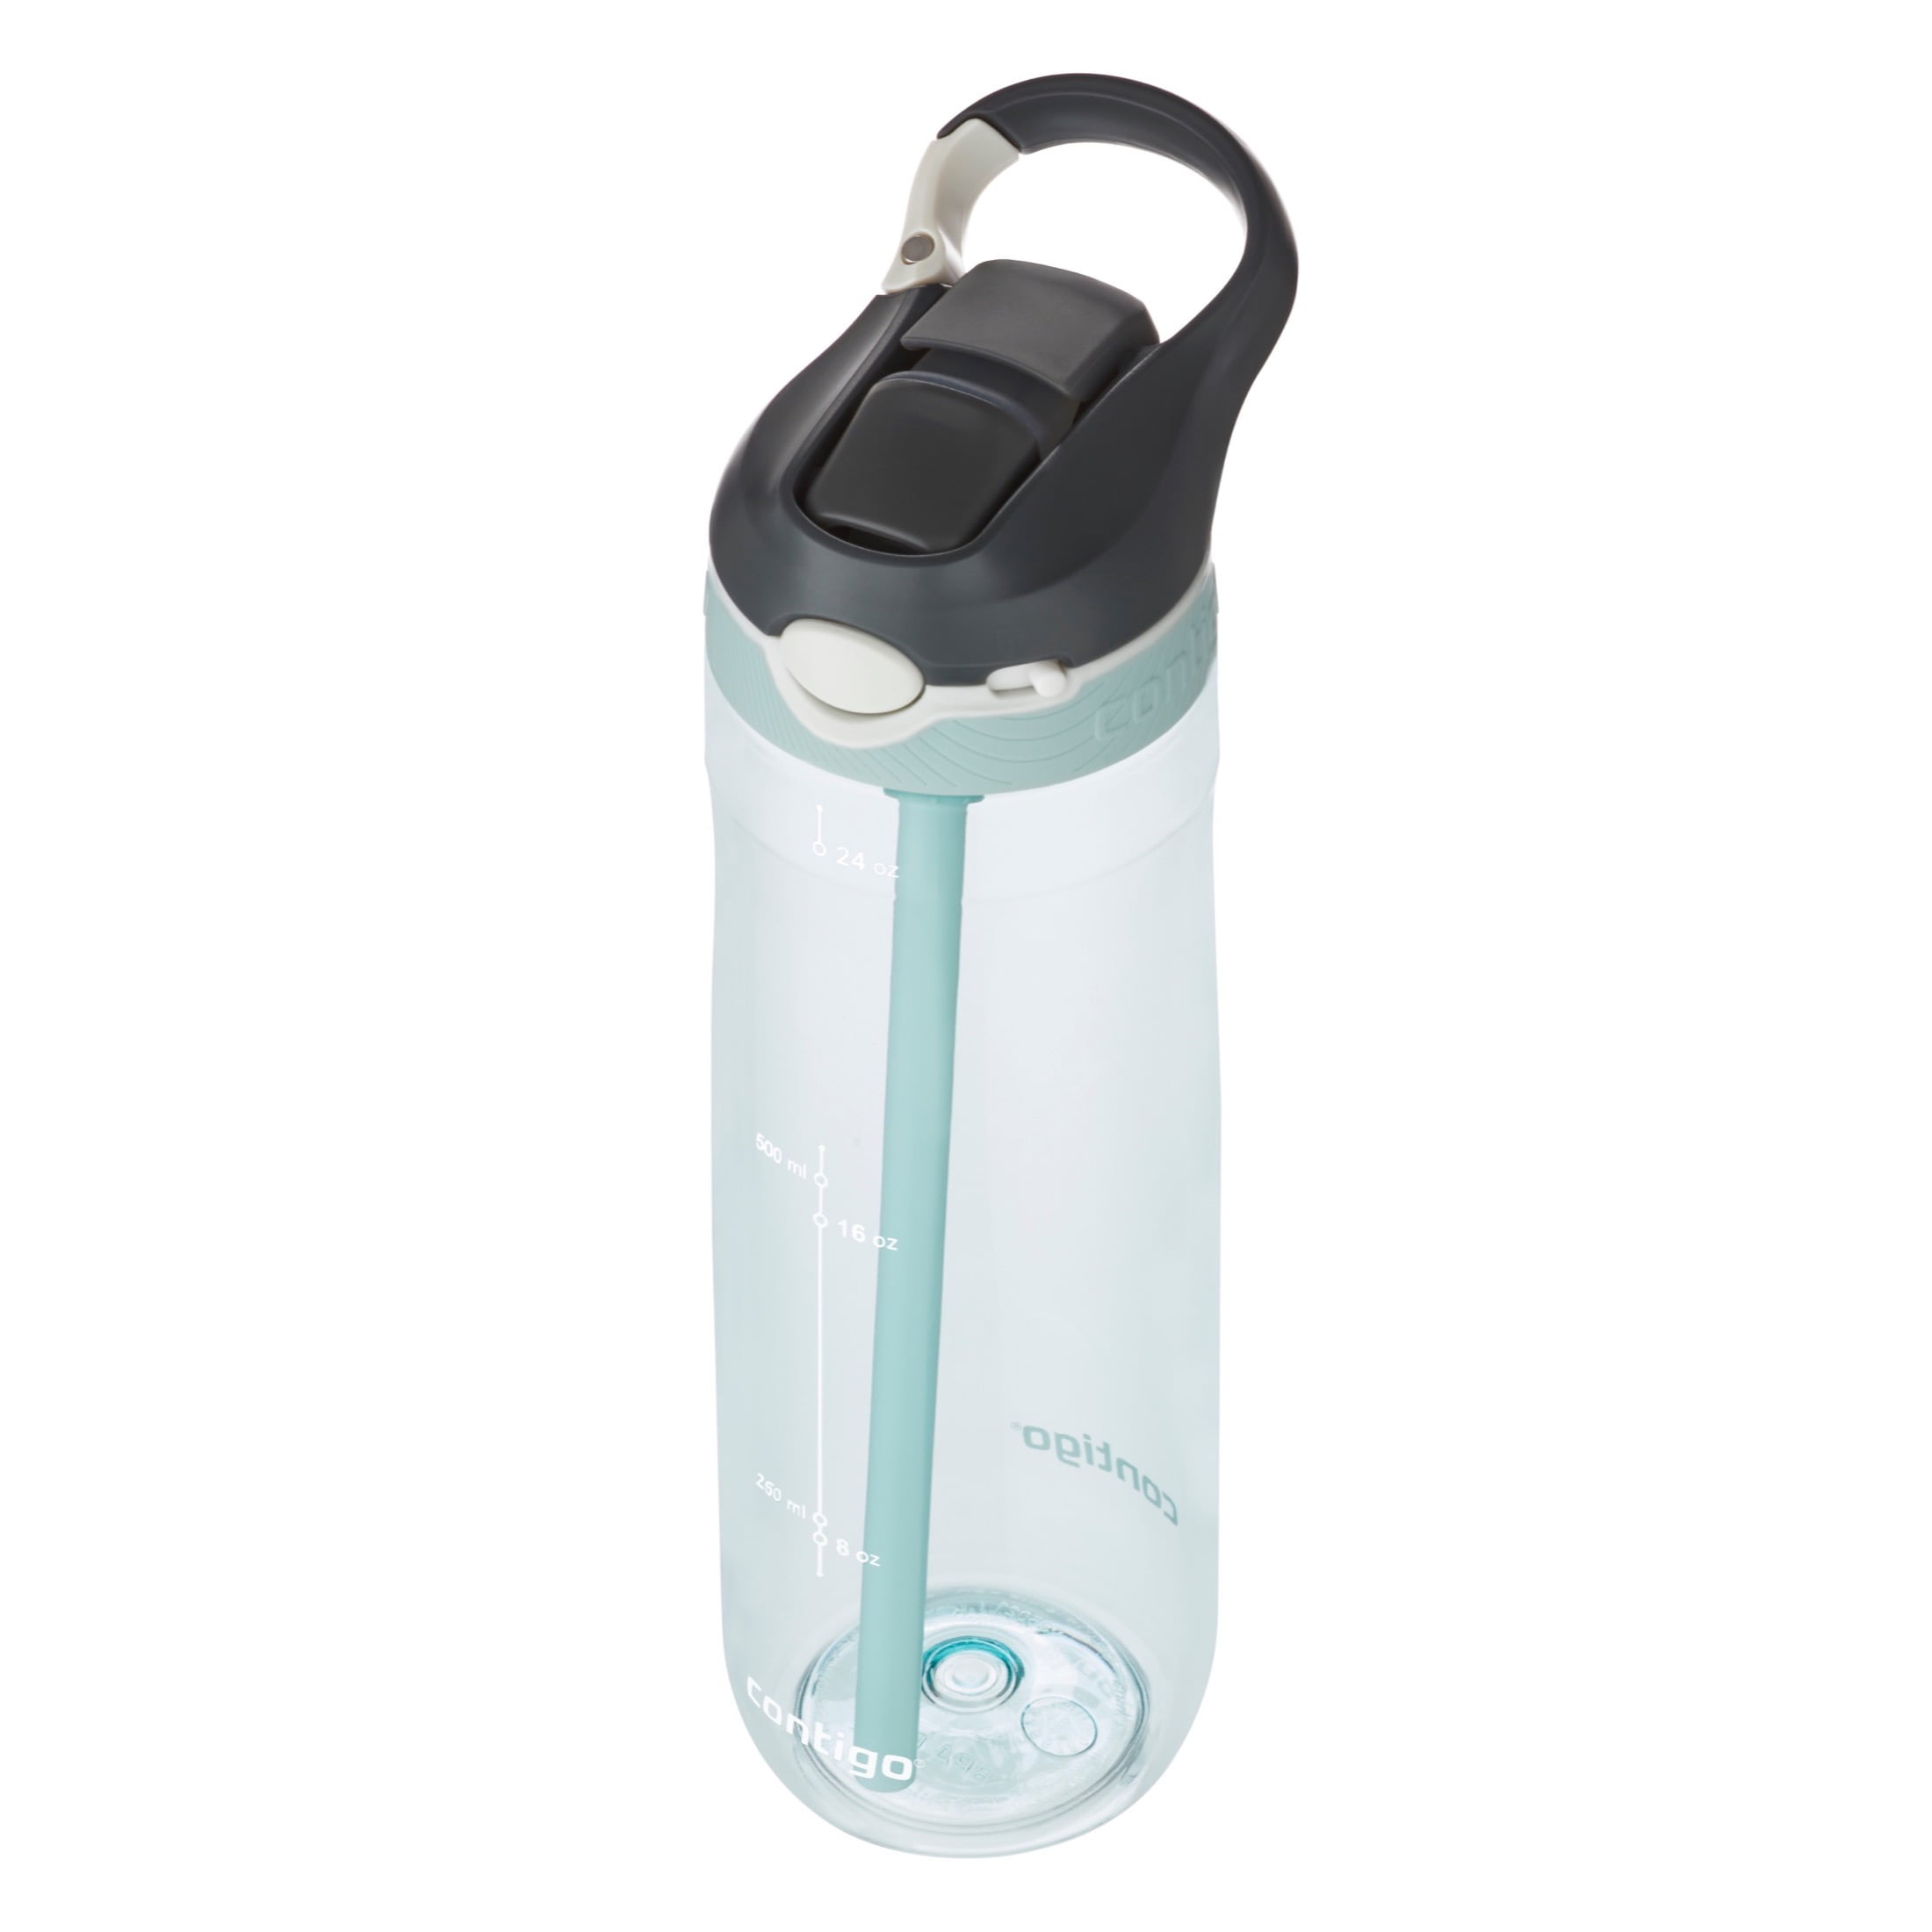 Contigo AutoSpout Water Bottle 24 oz. With Straw Ashland Clippable